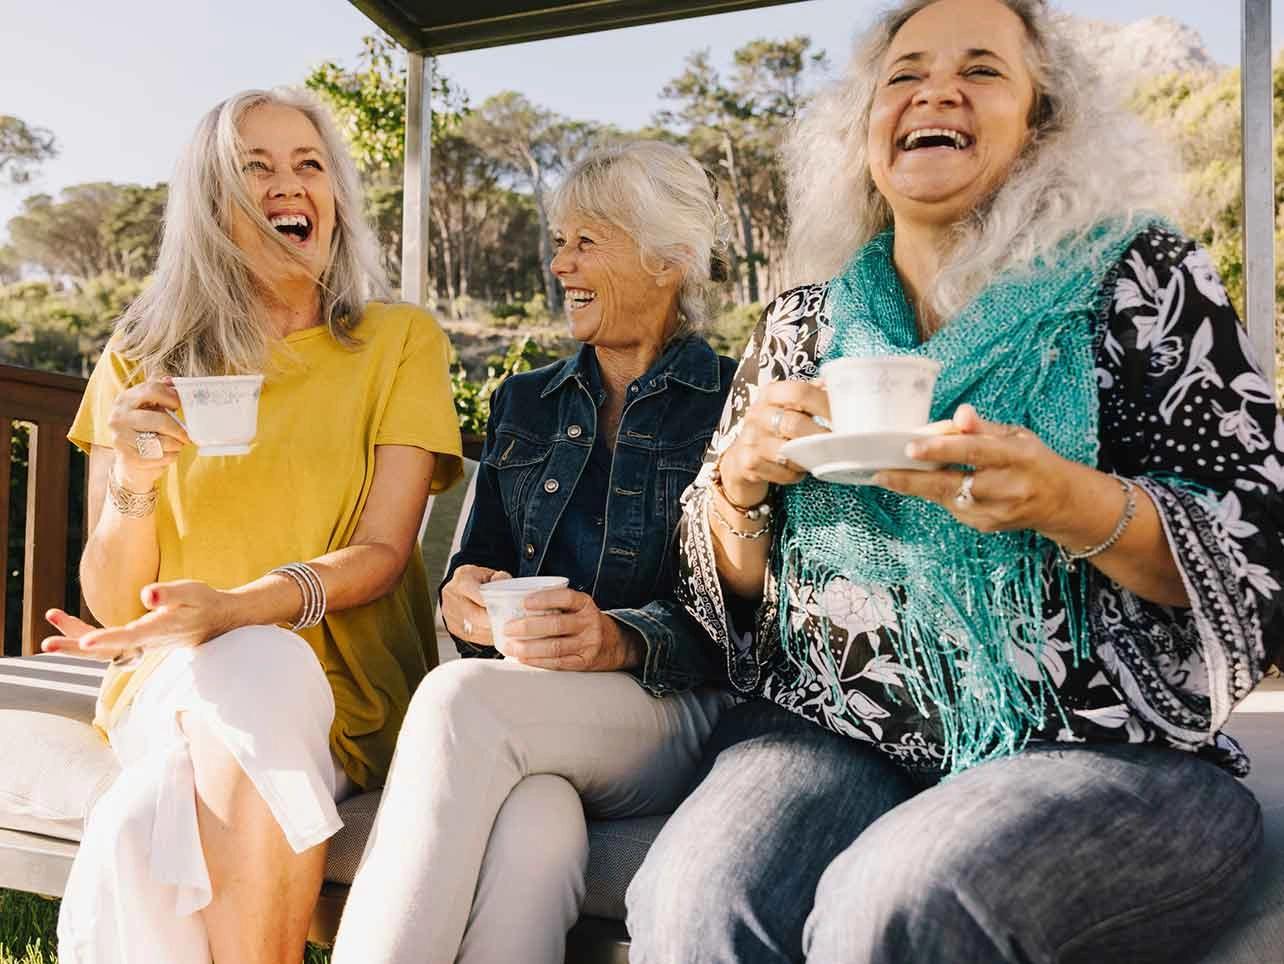 Bild: Ältere Damen lachend auf einer Bank